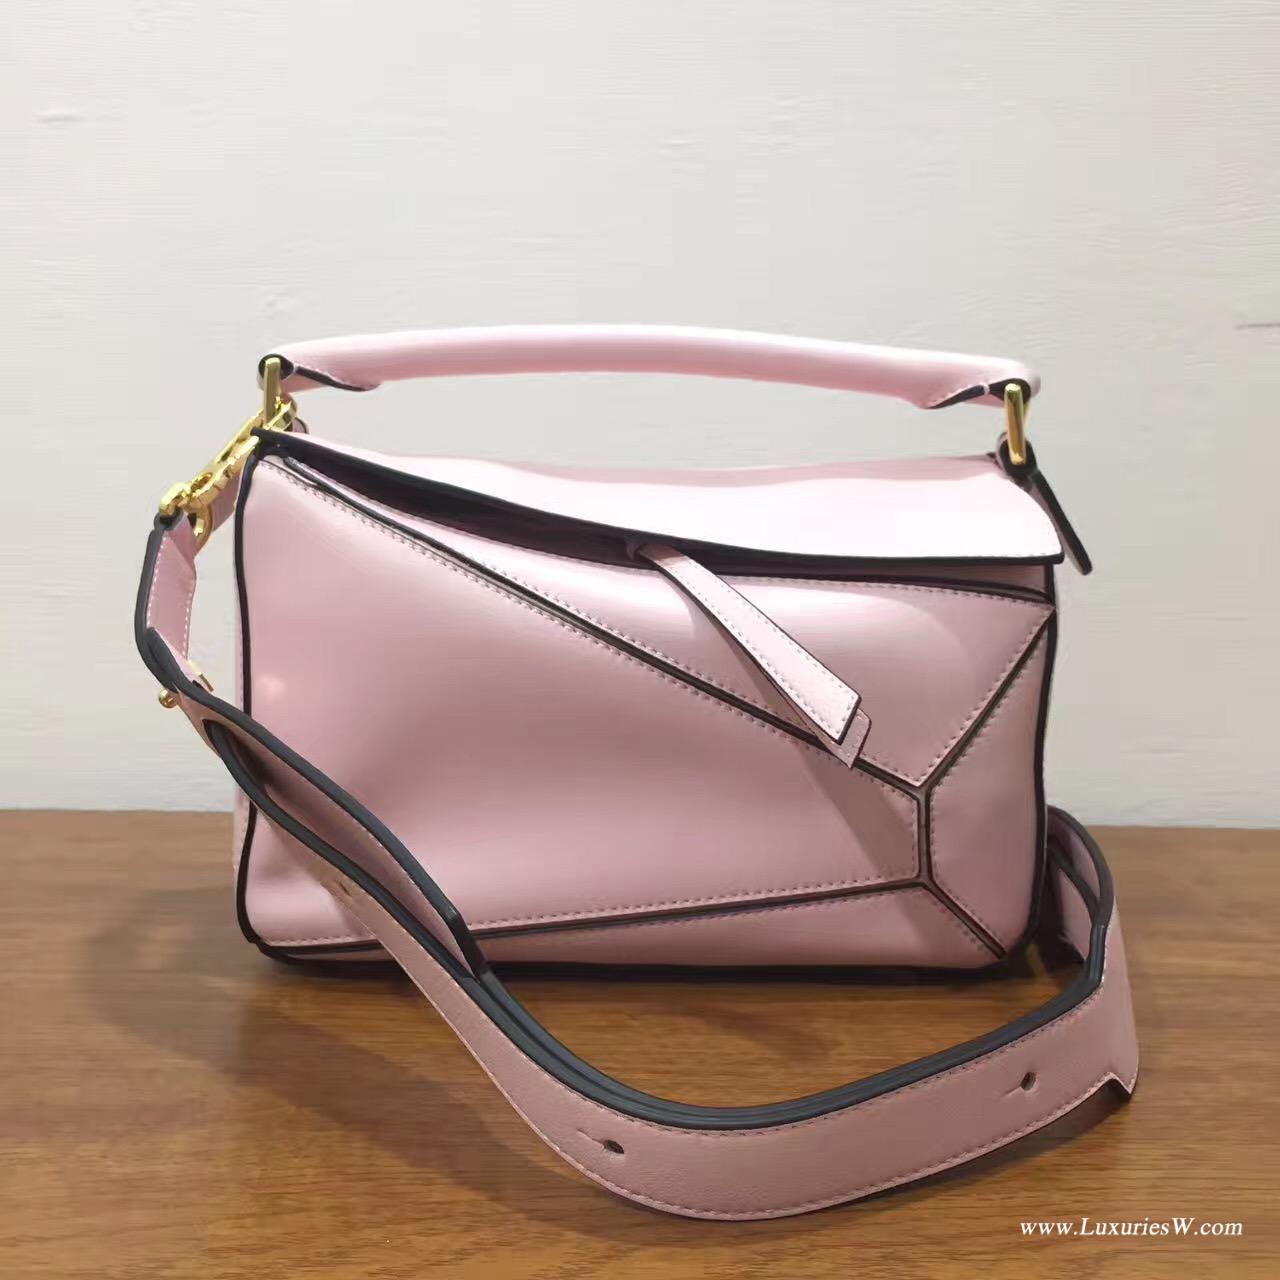 羅意威女包官網 LOEWE Mini Puzzle Bag 粉色 長方體形狀 折疊幾何包